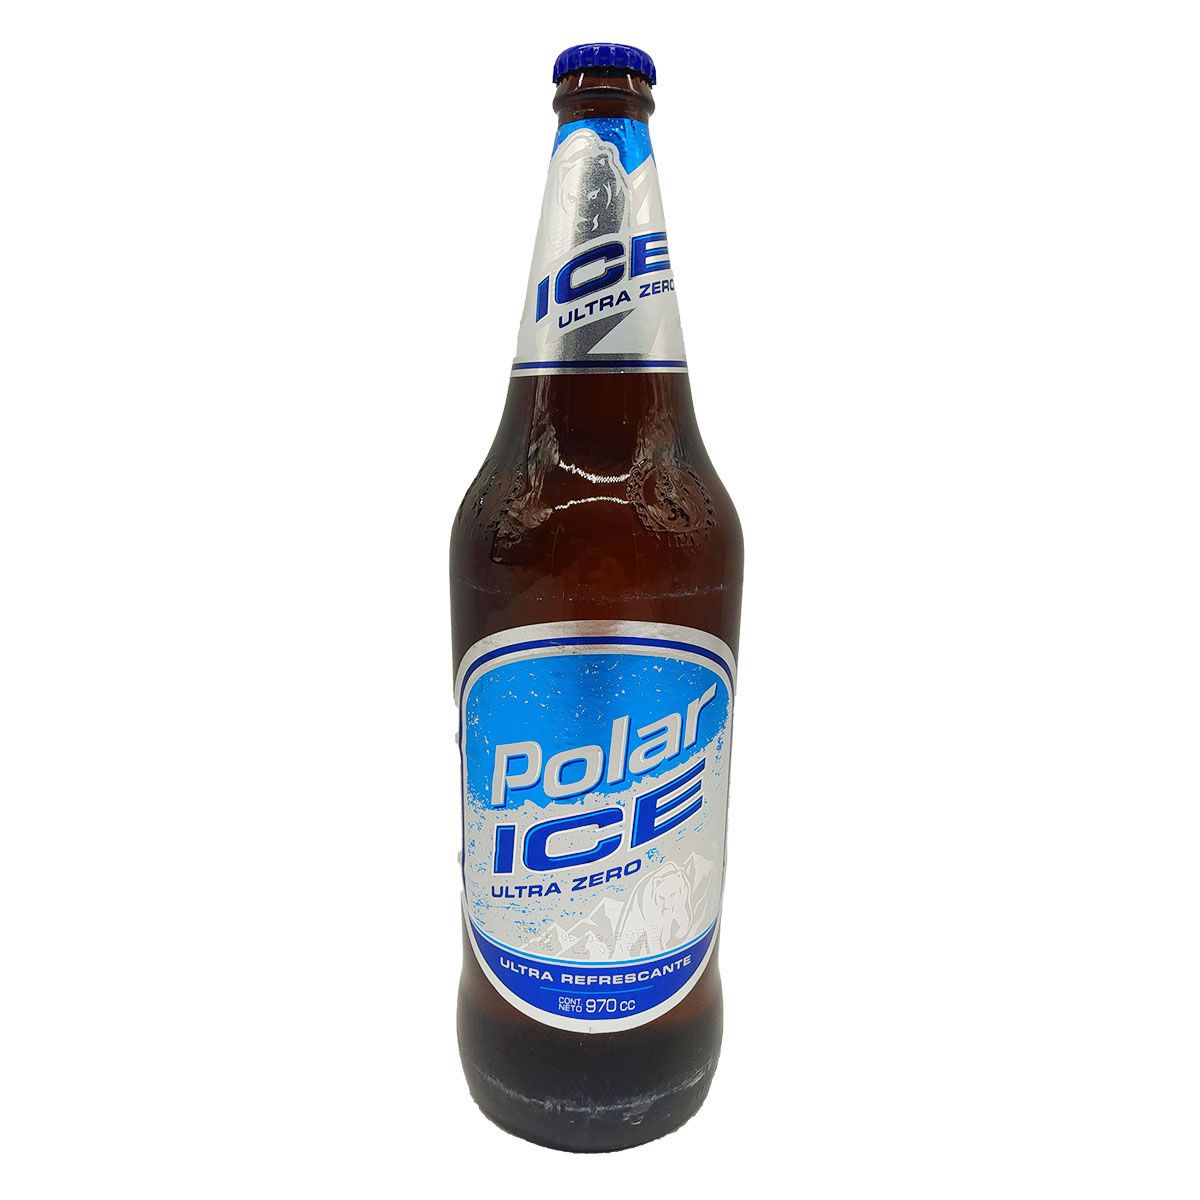 Cerveza, Polar Negra. 222 ml (7.5 oz) - iTengo